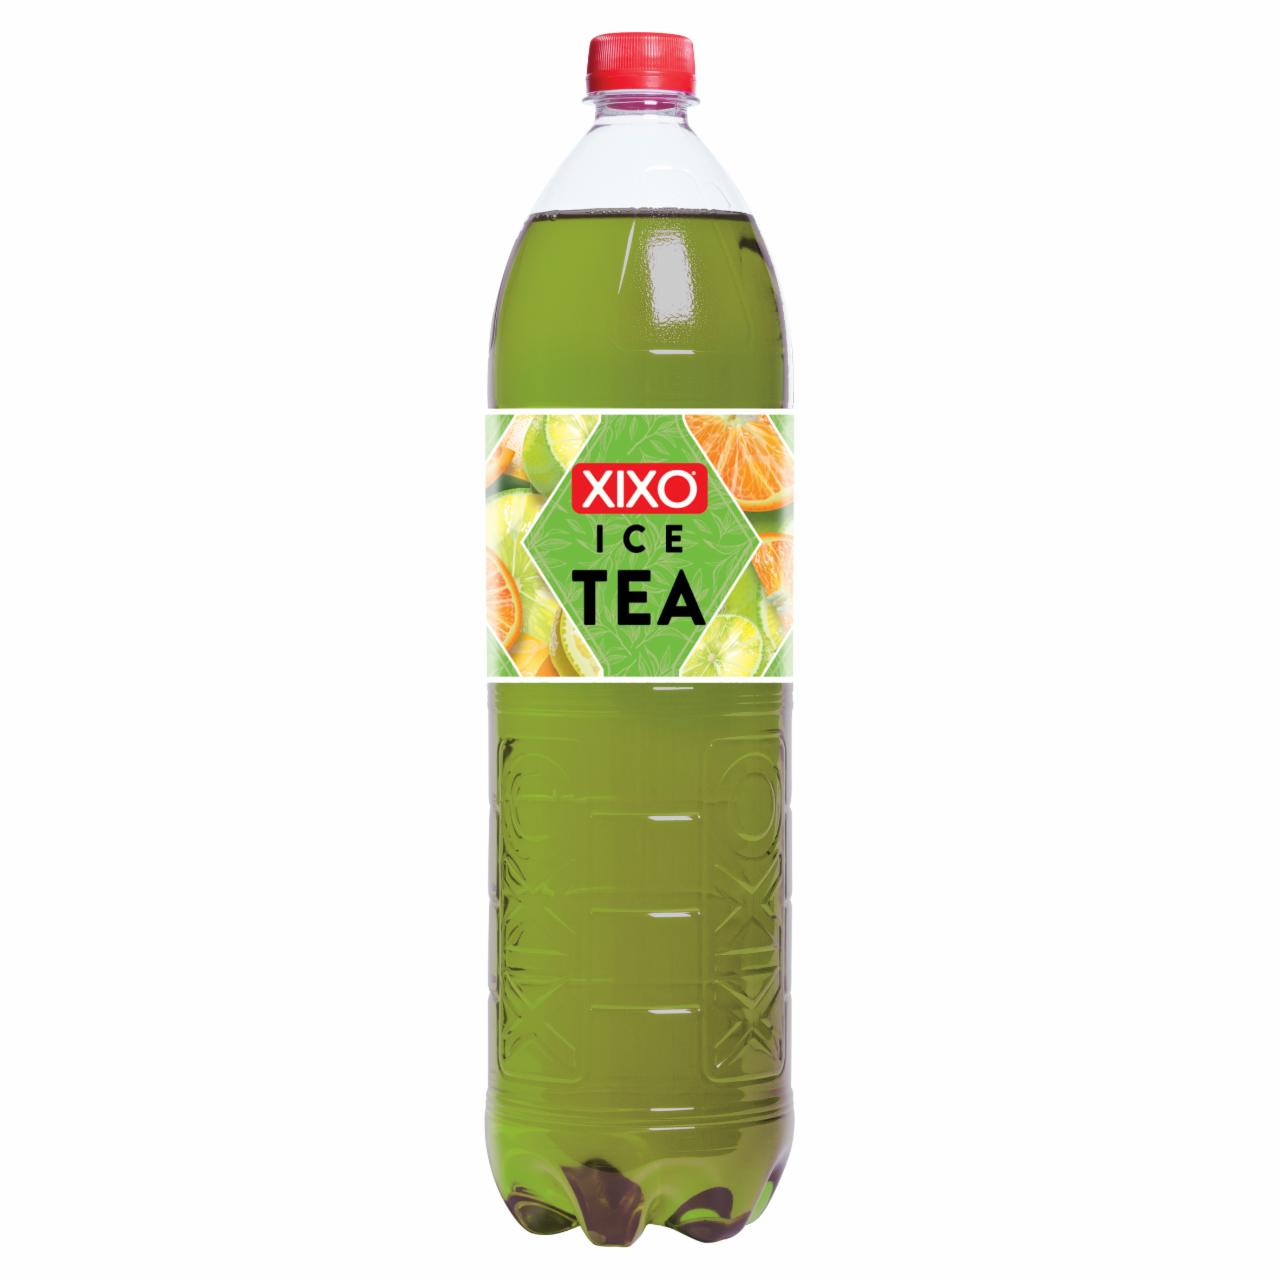 Képek - XIXO Ice Tea citrusos zöld tea 1,5 l